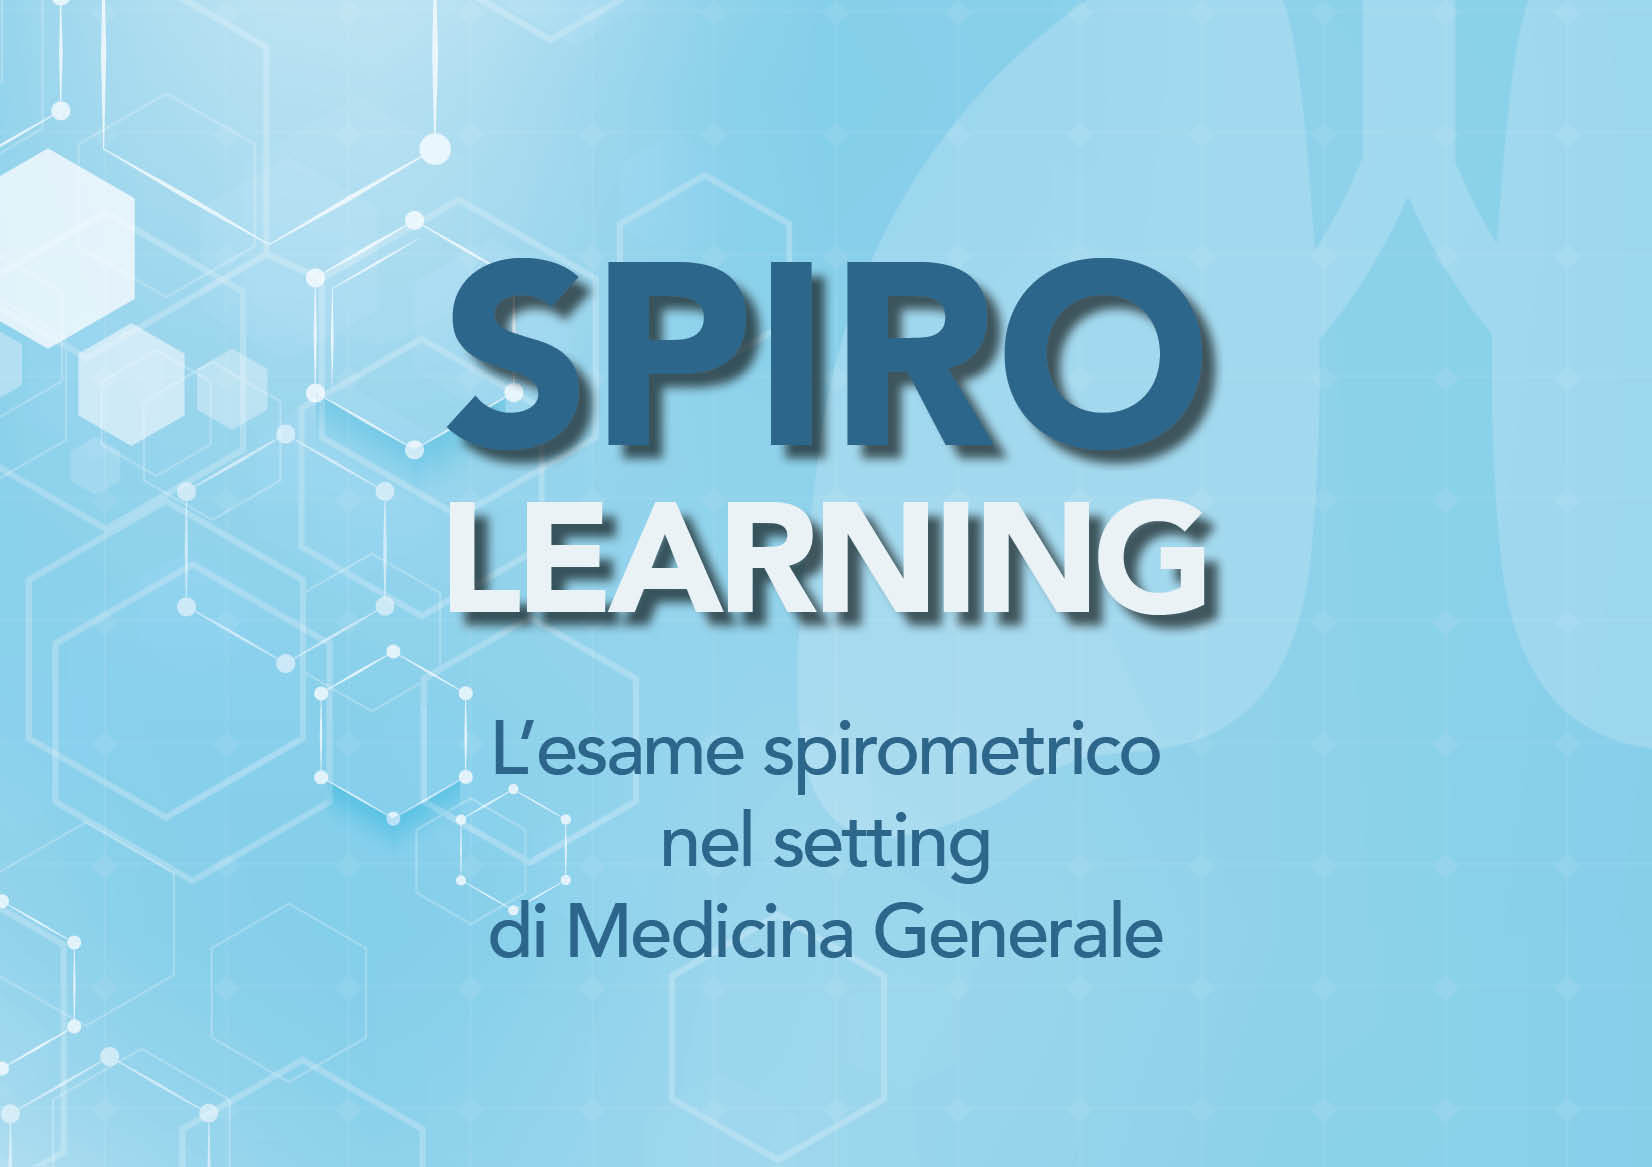 SPIRO LEARNING – L’esame spirometrico nel setting di Medicina Generale